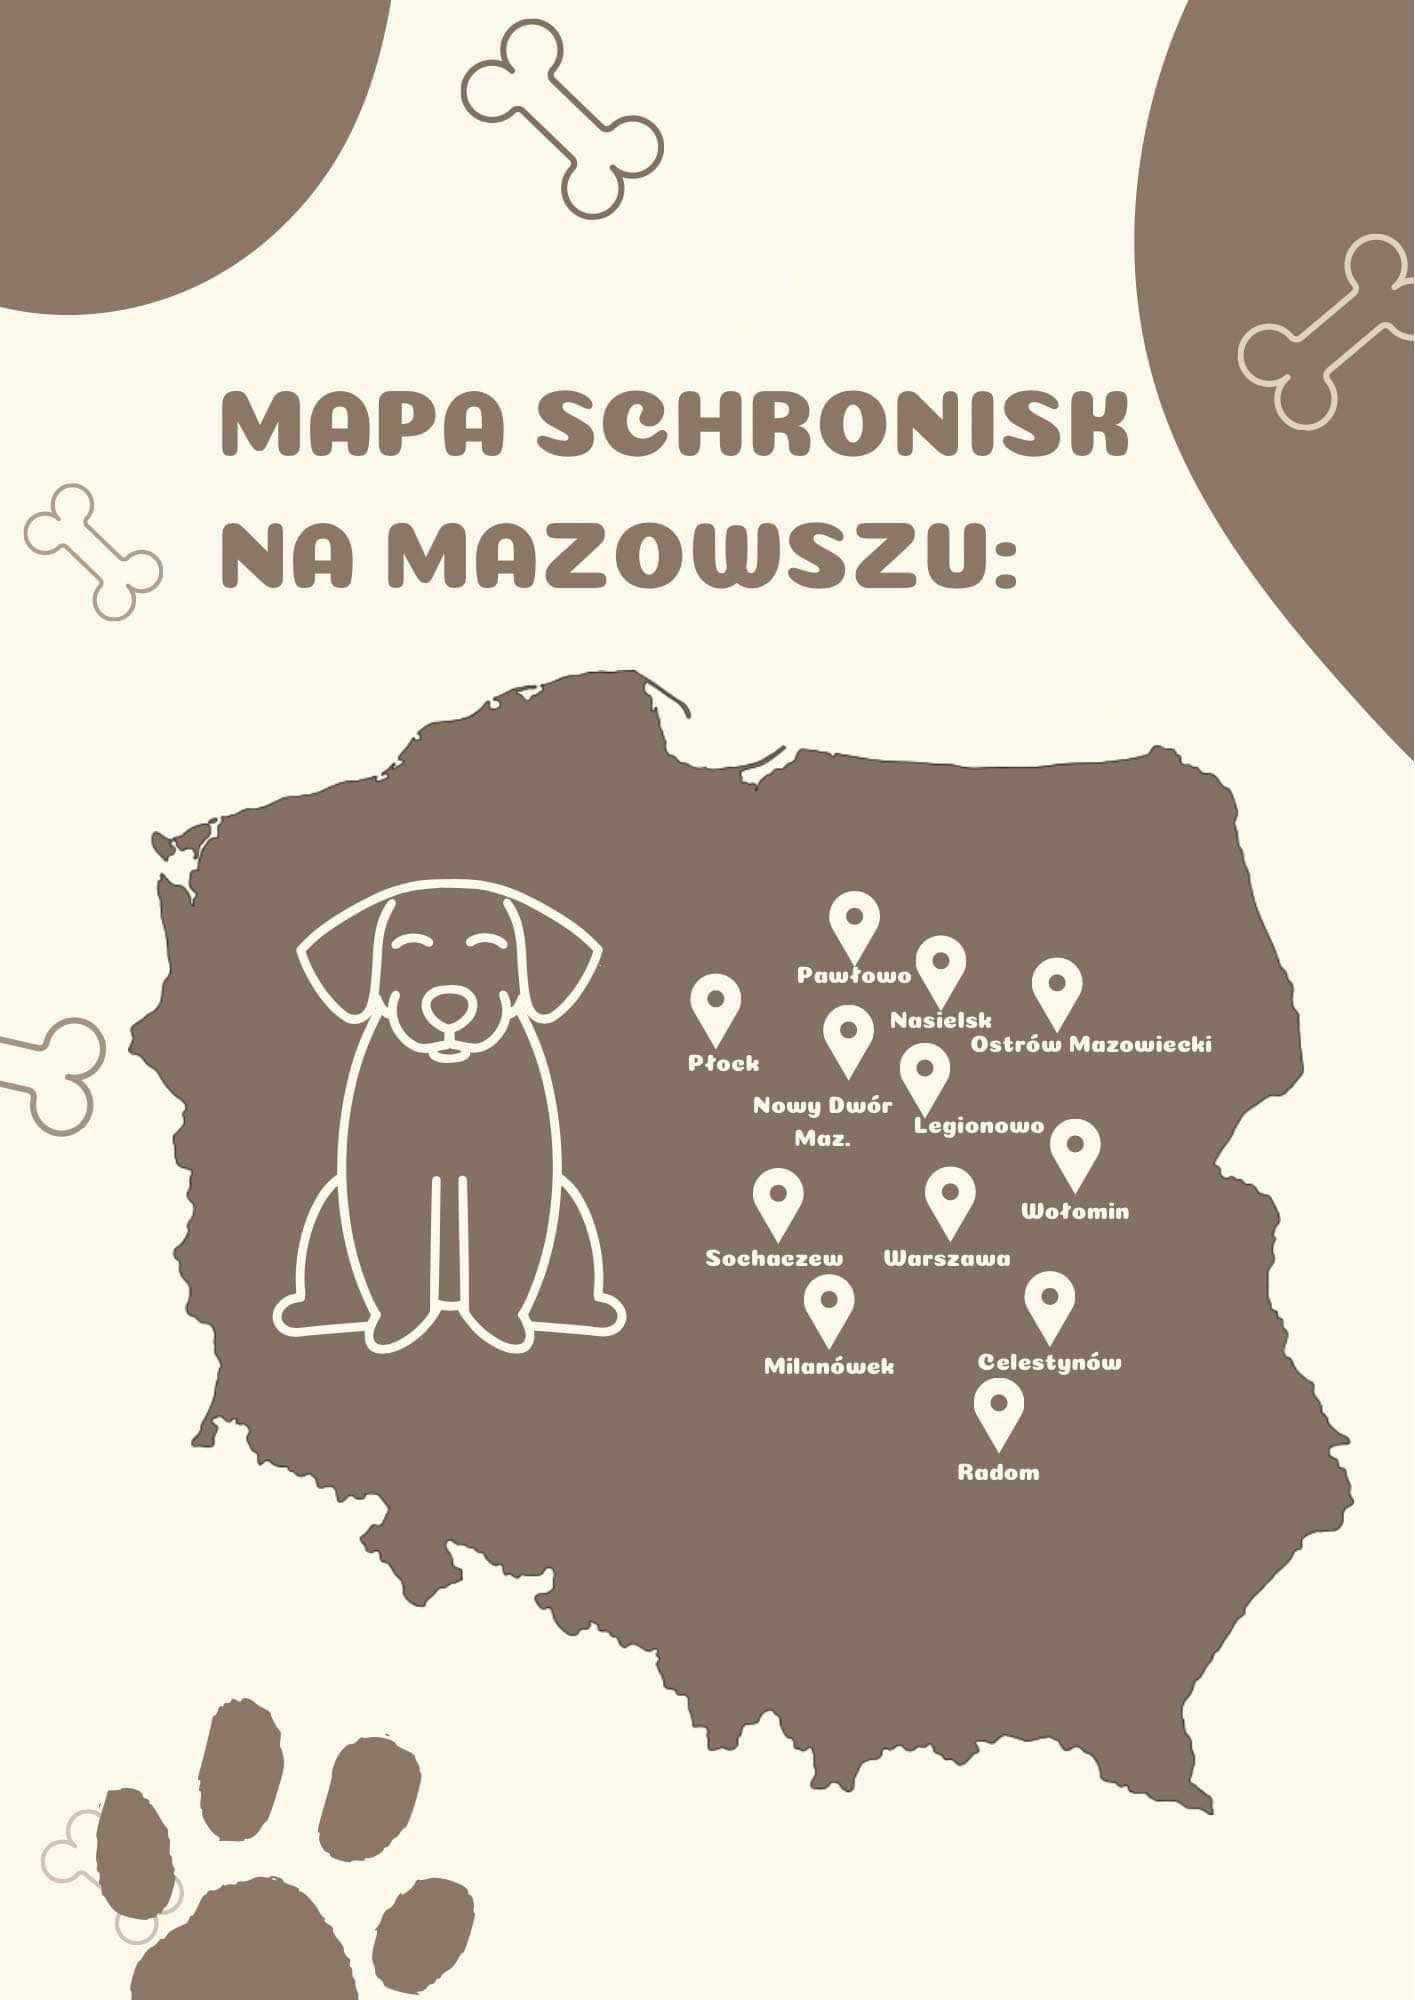 mapa schronisk mazowsze